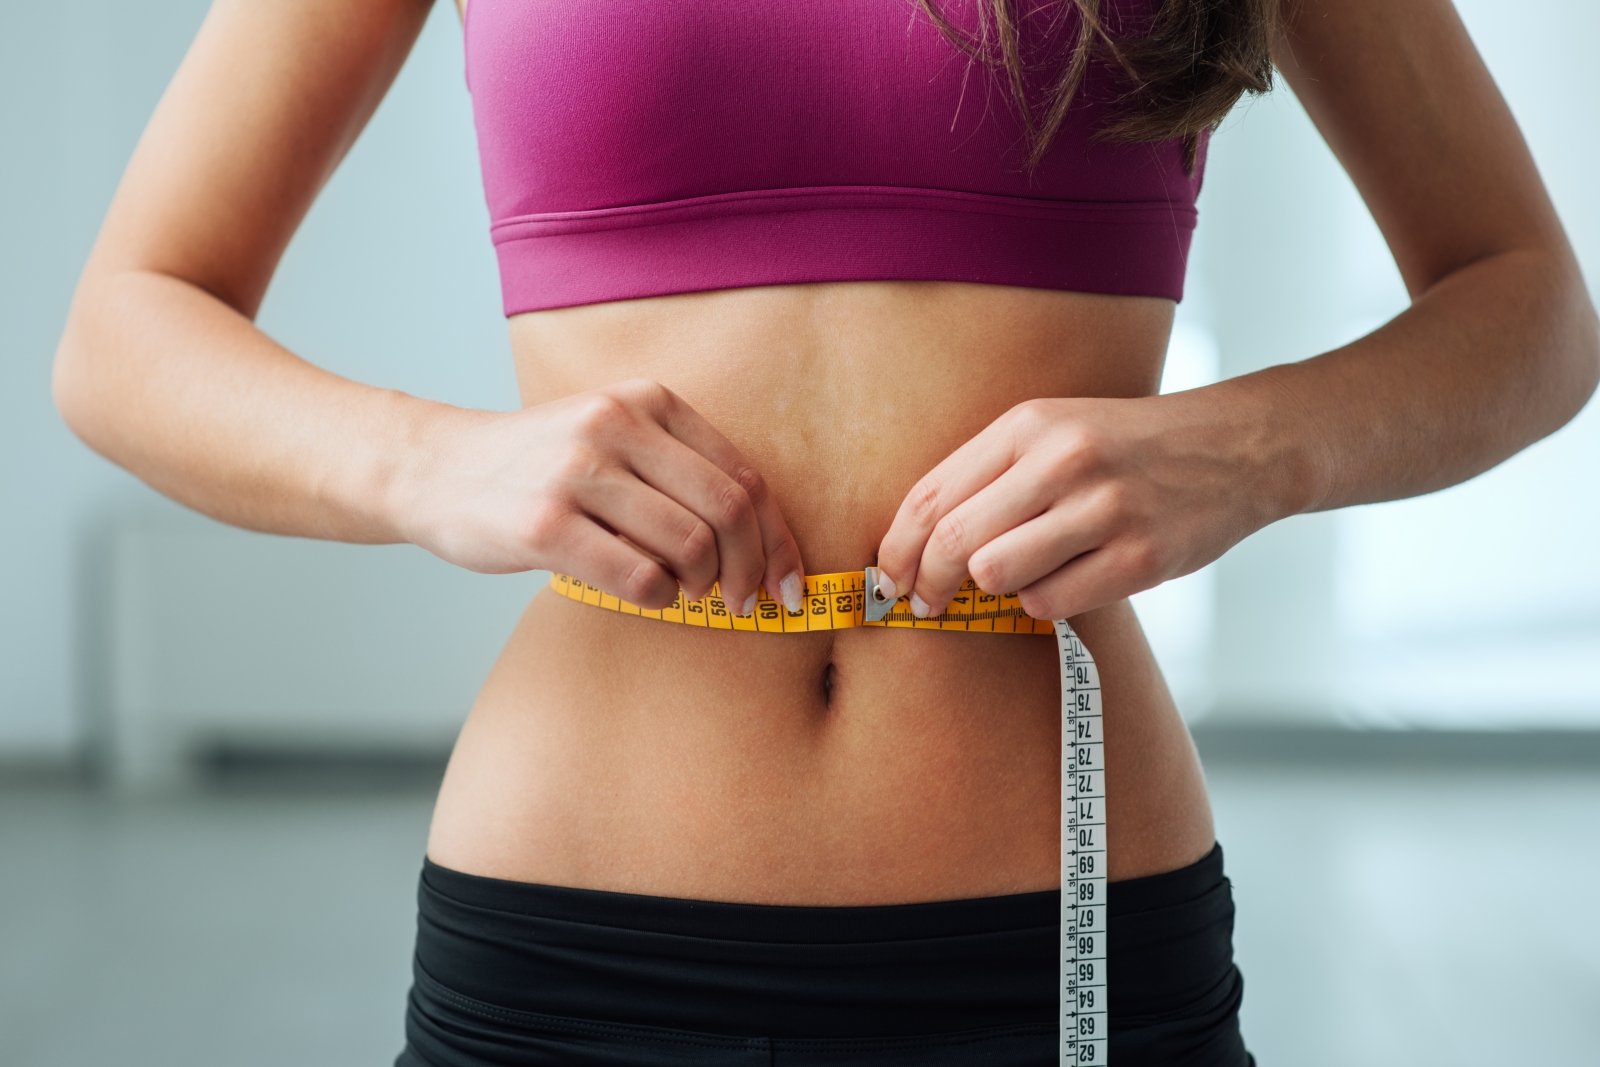 jus by julie svorio metimo apžvalgos svorio metimas padės pcos